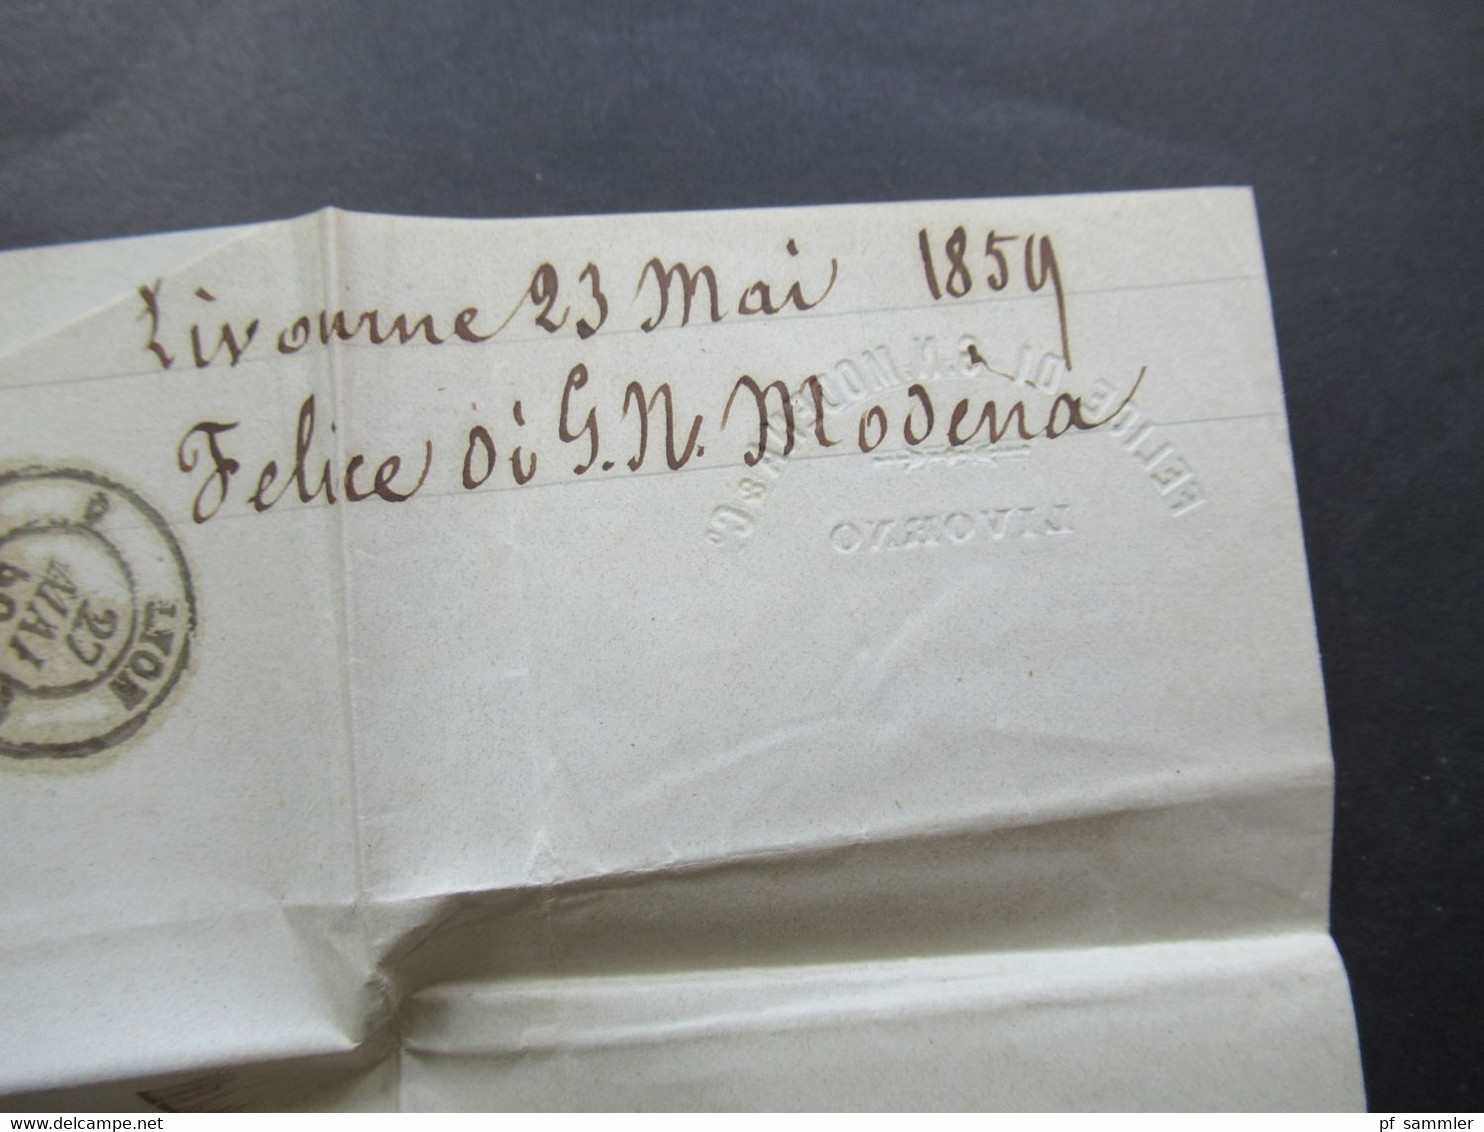 Auslandsbrief mit Inhalt 1859 Livorno - Lyon roter K2 Tosc Marseille handschriftlicher Vermerk Vapeur via Marseille